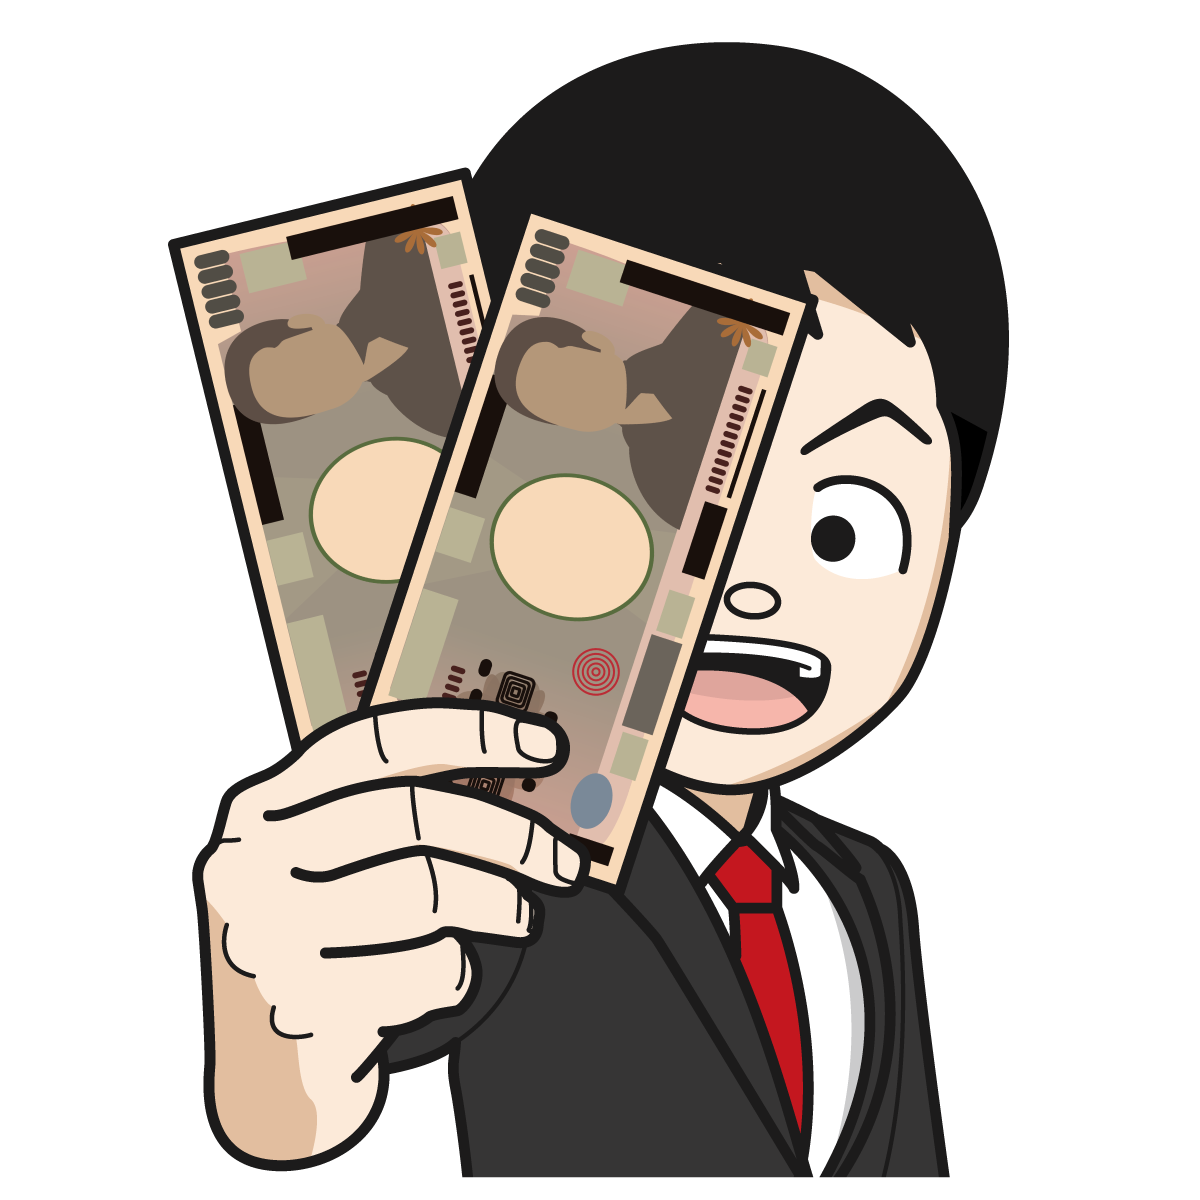 2万円 1万円札2枚 を掲げるサラリーマン 銀行員 公務員 男 Item 35 イラスト Mido Kichi